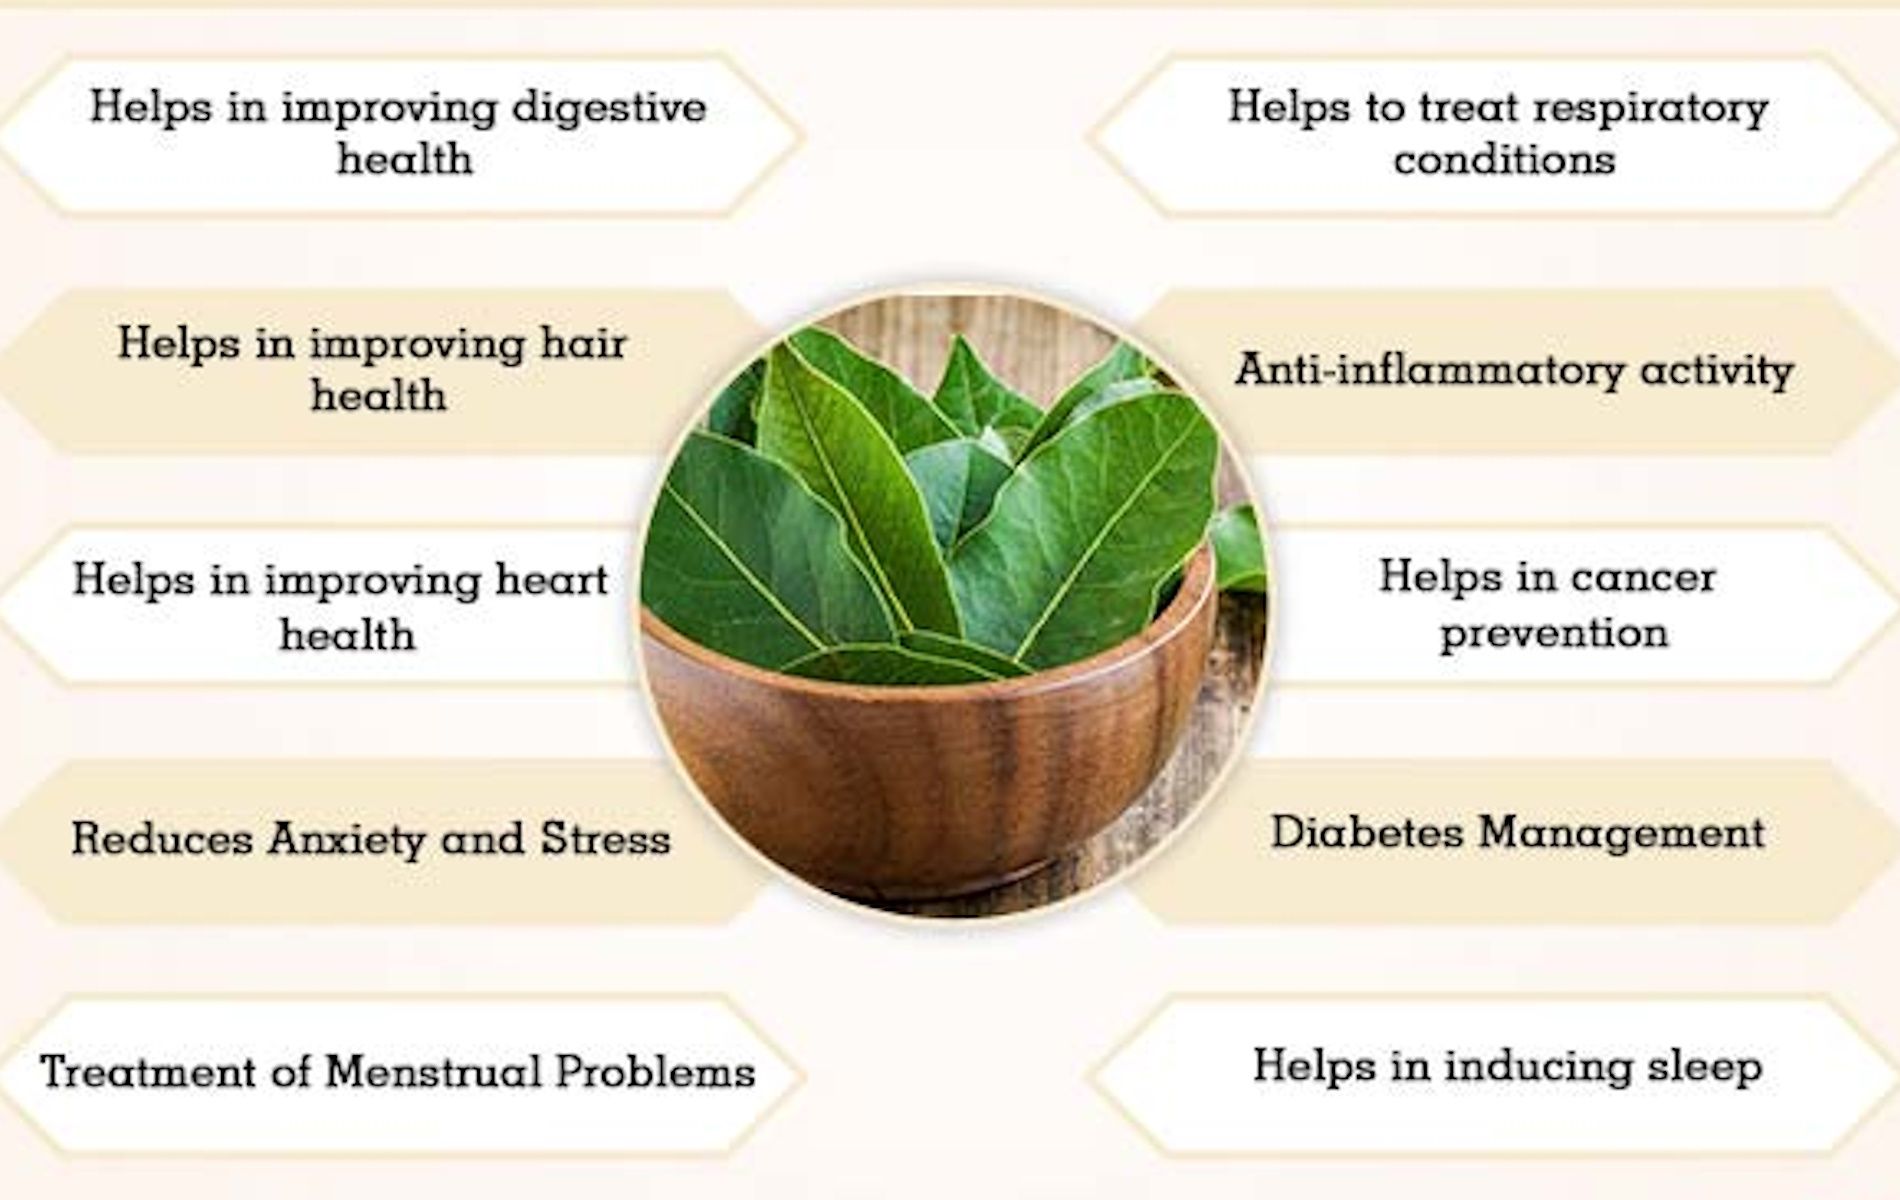 Manfaat daun salam untuk kesehatan manusia.